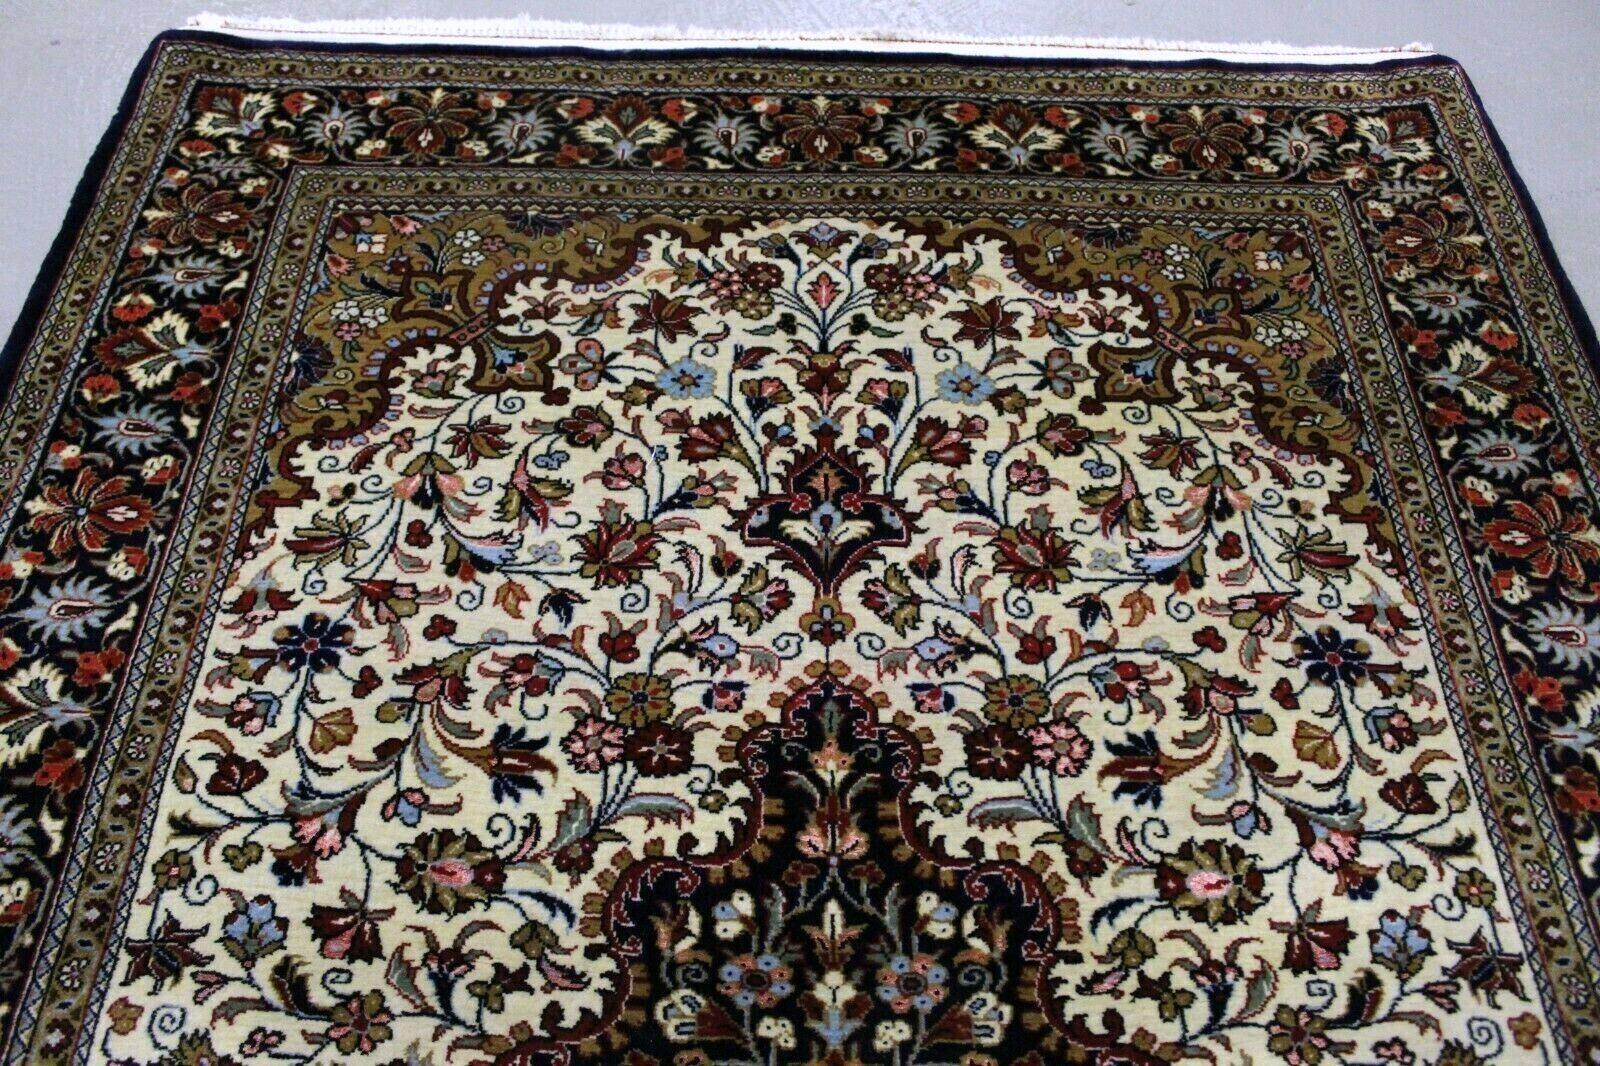  Wir stellen unseren exquisiten, handgefertigten Qum-Teppich im persischen Vintage-Stil vor, ein fesselndes Stück, das zeitlose Eleganz in jeden Raum bringt. Dieser Teppich aus den 1970er Jahren misst ungefähr 3,7' x 5,1' (115cm x 156cm) und ist